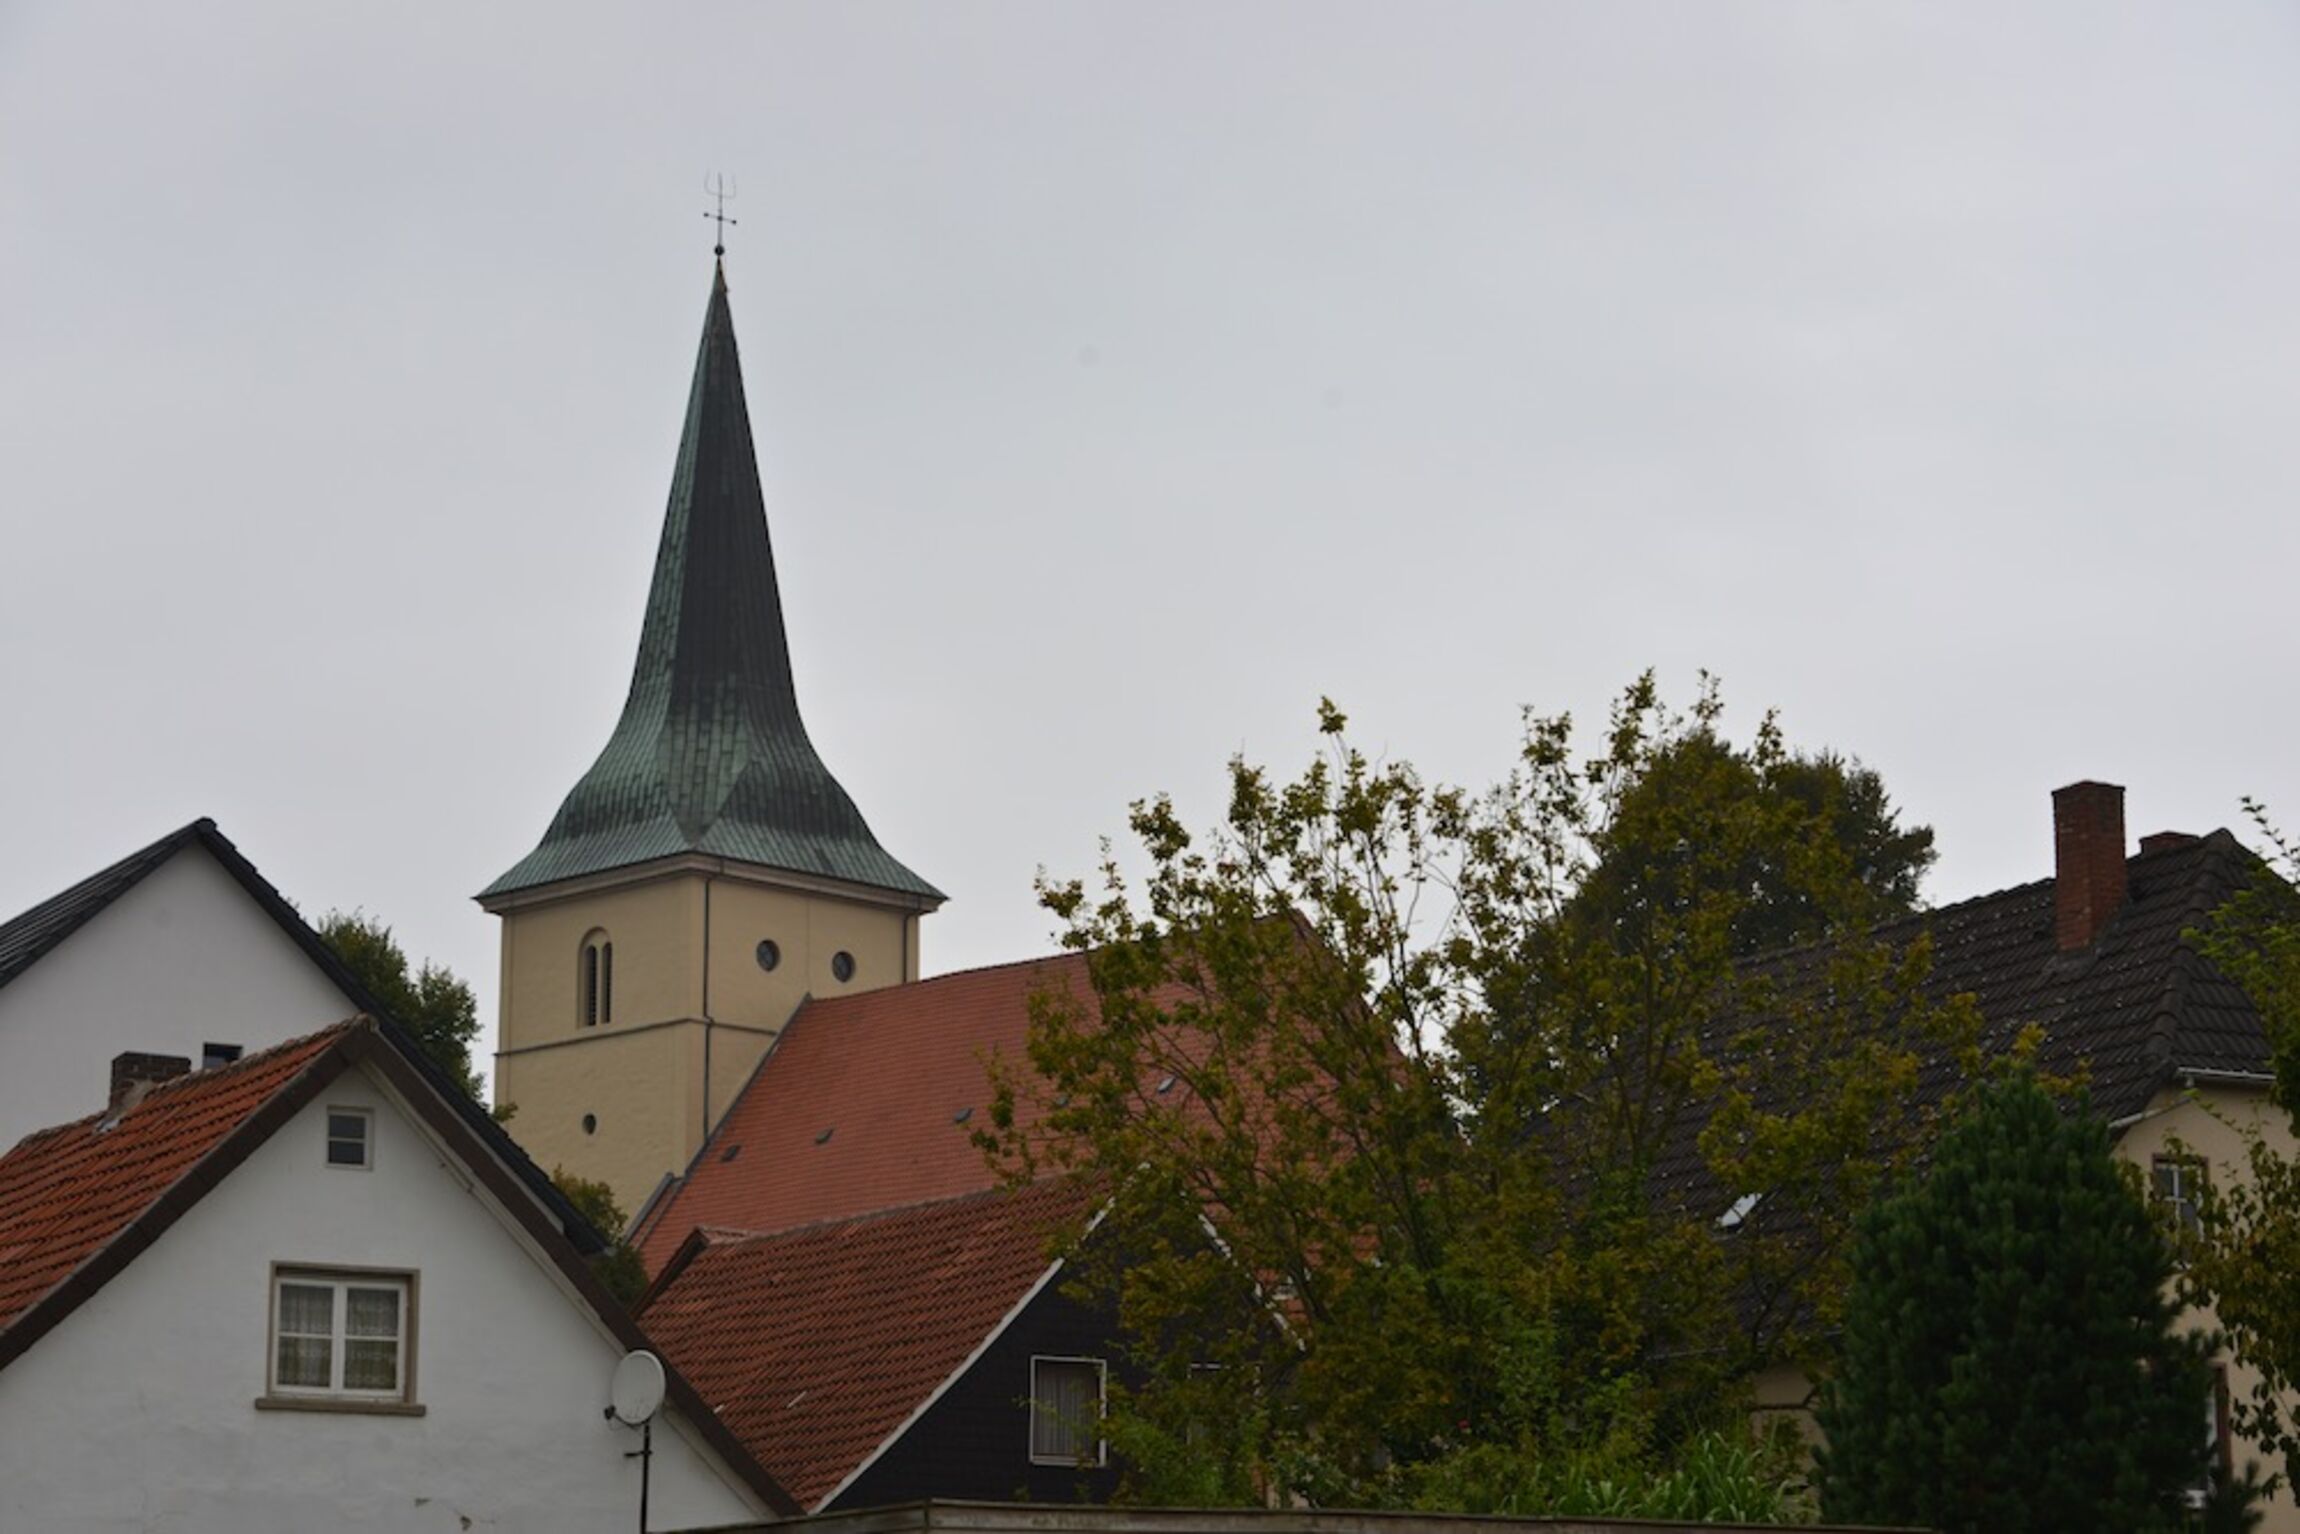 Kirchturm über Dächern quer